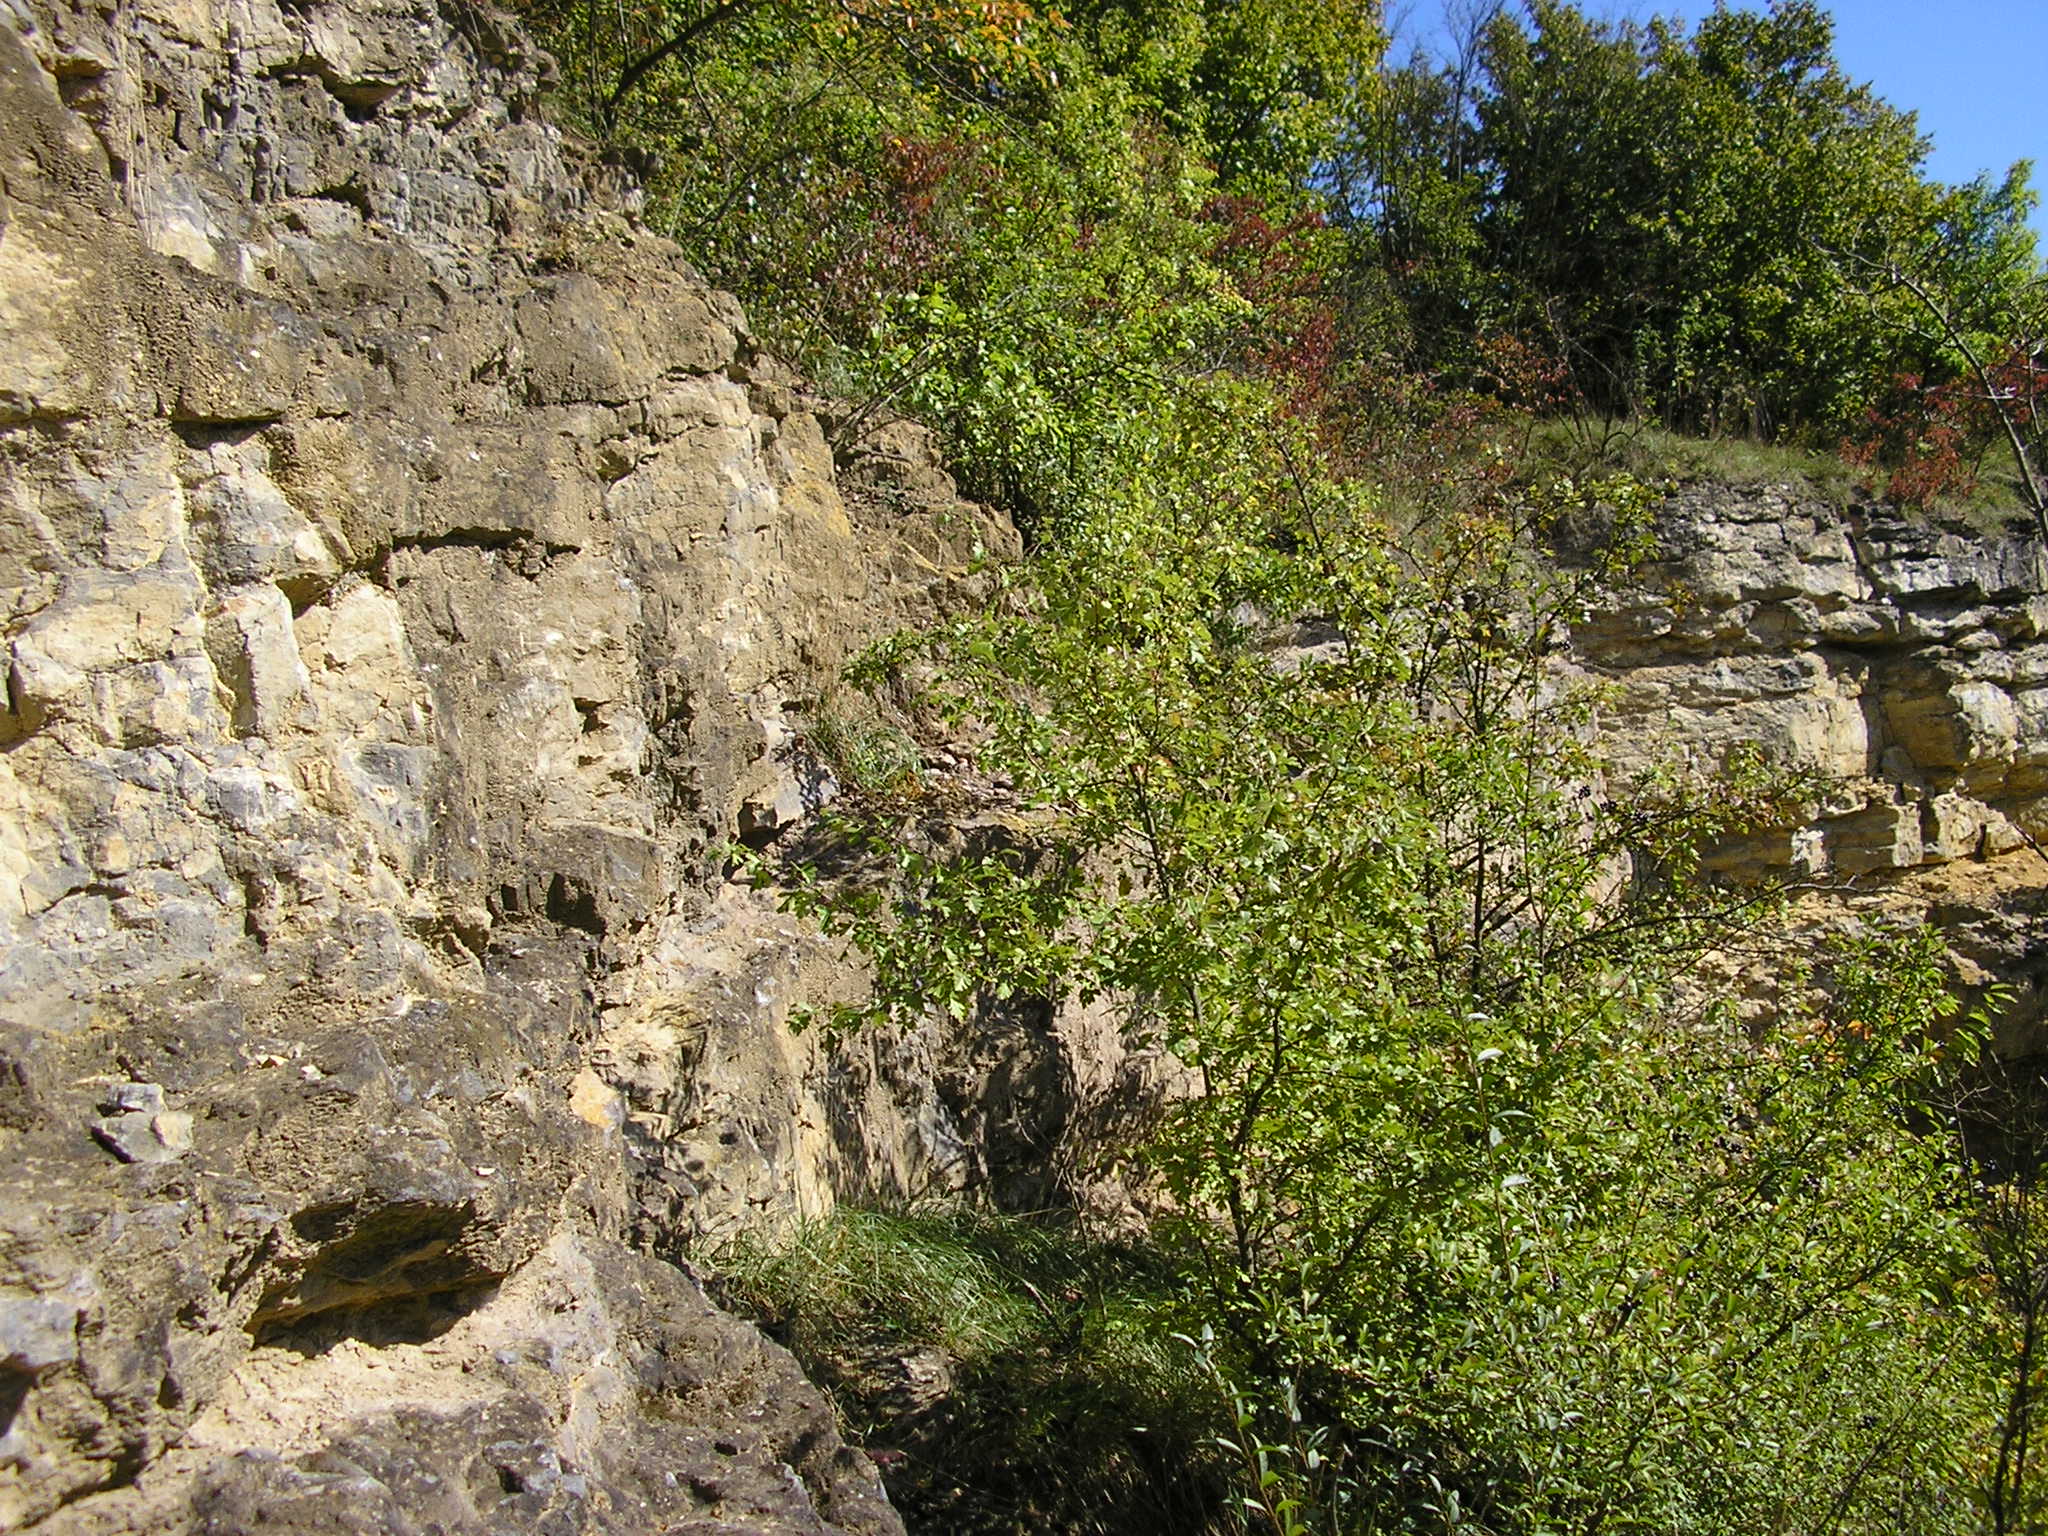 001 . Čelechovice na Hané-Růžičkův lom (001-A) - střední a V část S stěny (detail) - pohled od ČE-9